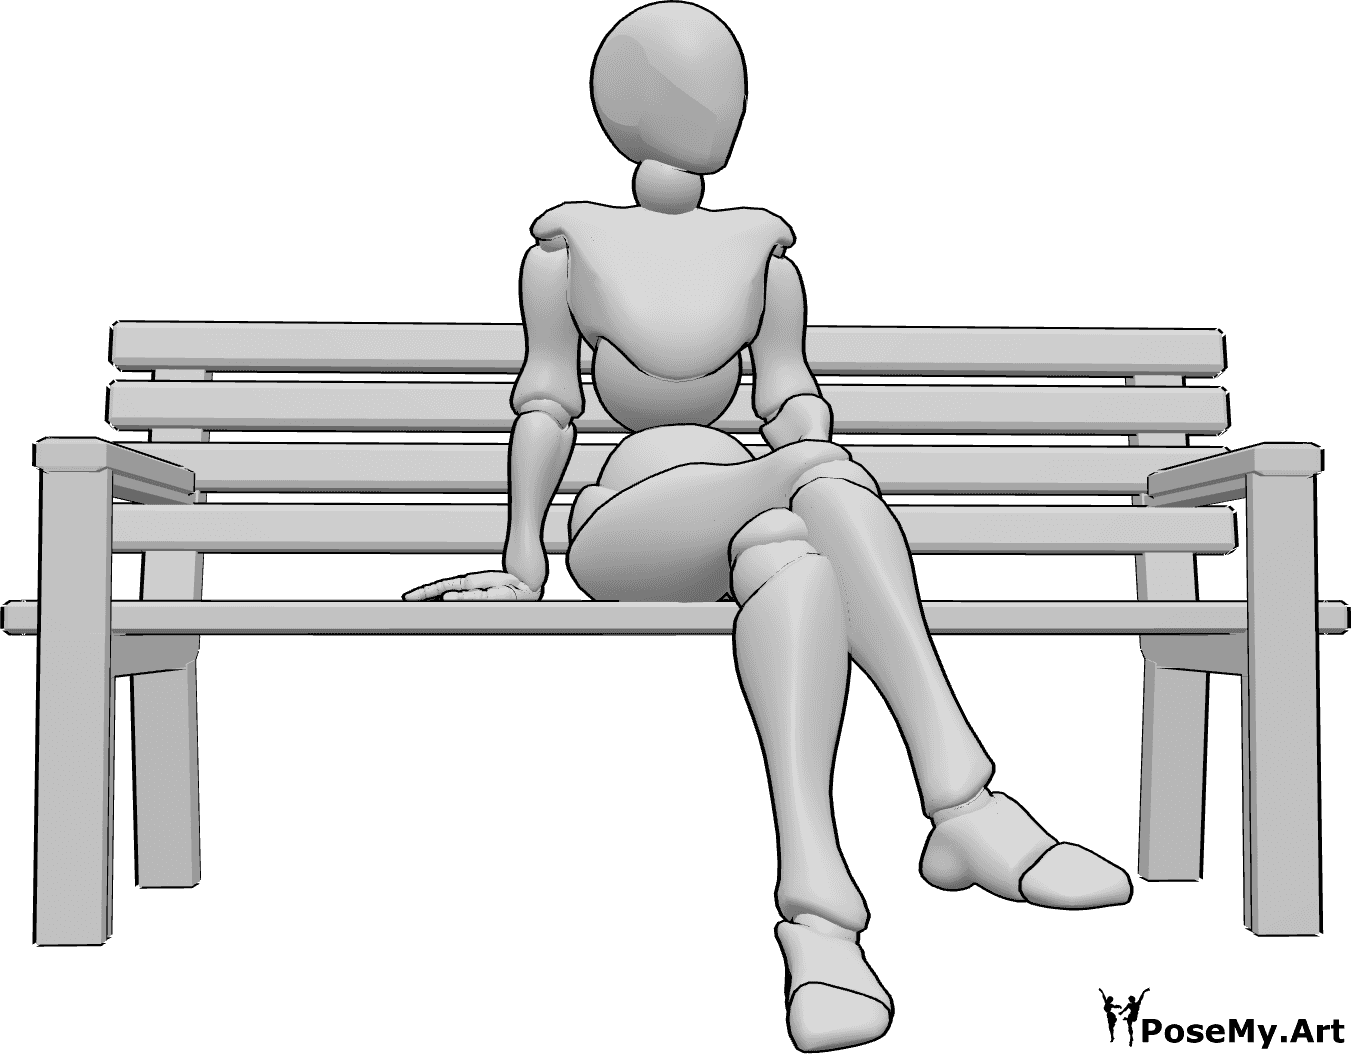 Référence des poses- Position assise jambes croisées - La femme est assise sur le banc, les jambes croisées et regarde vers la gauche.